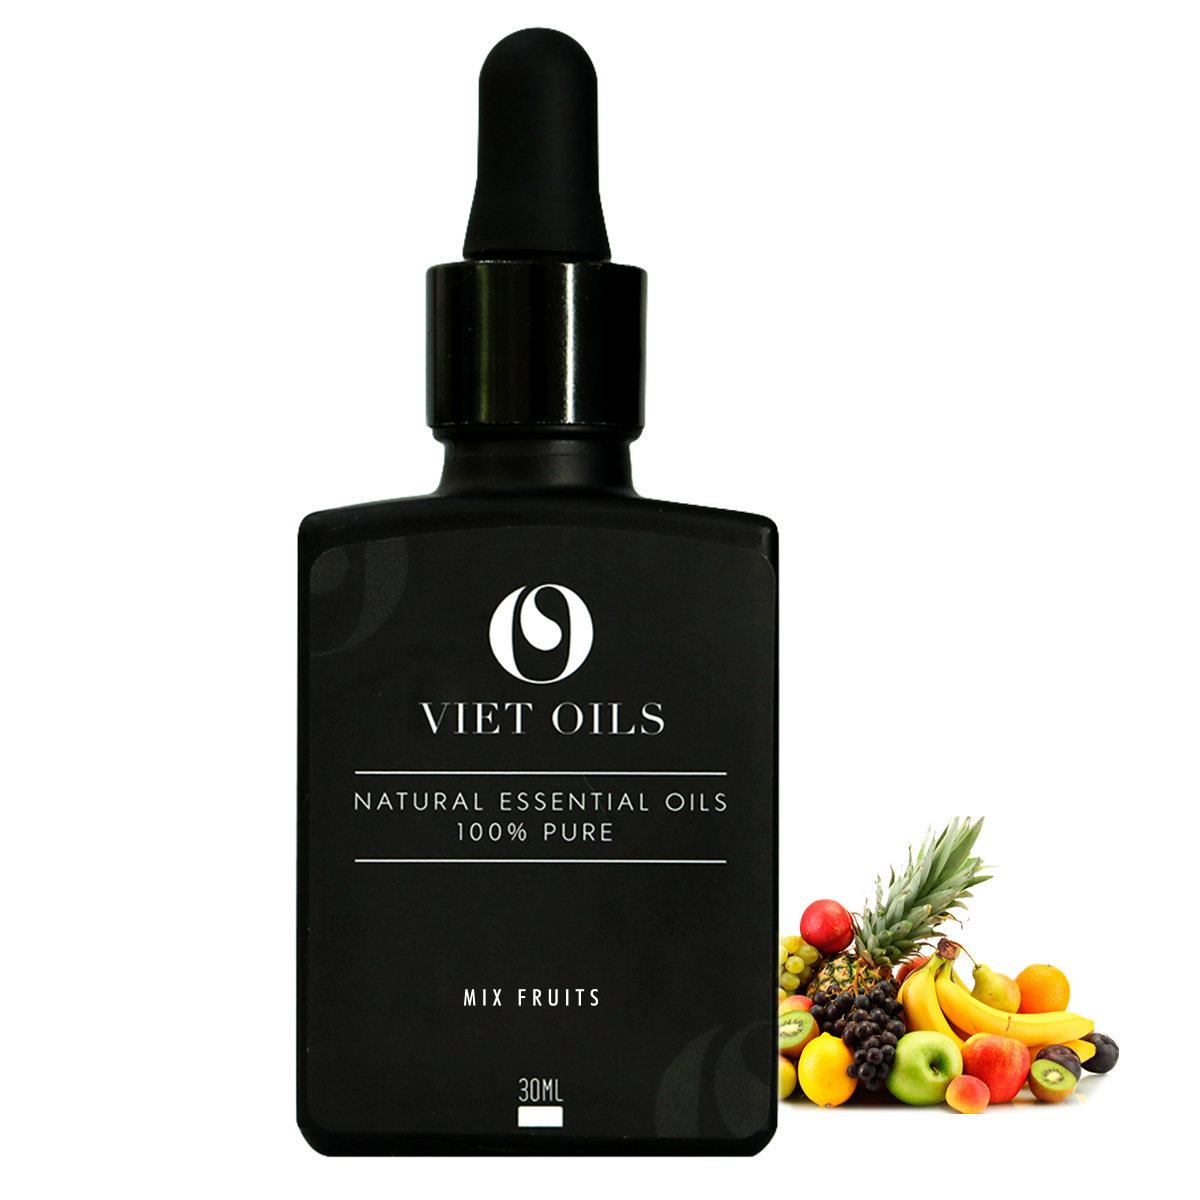 Tinh dầu Mix Fruits - 30ml Viet Oils